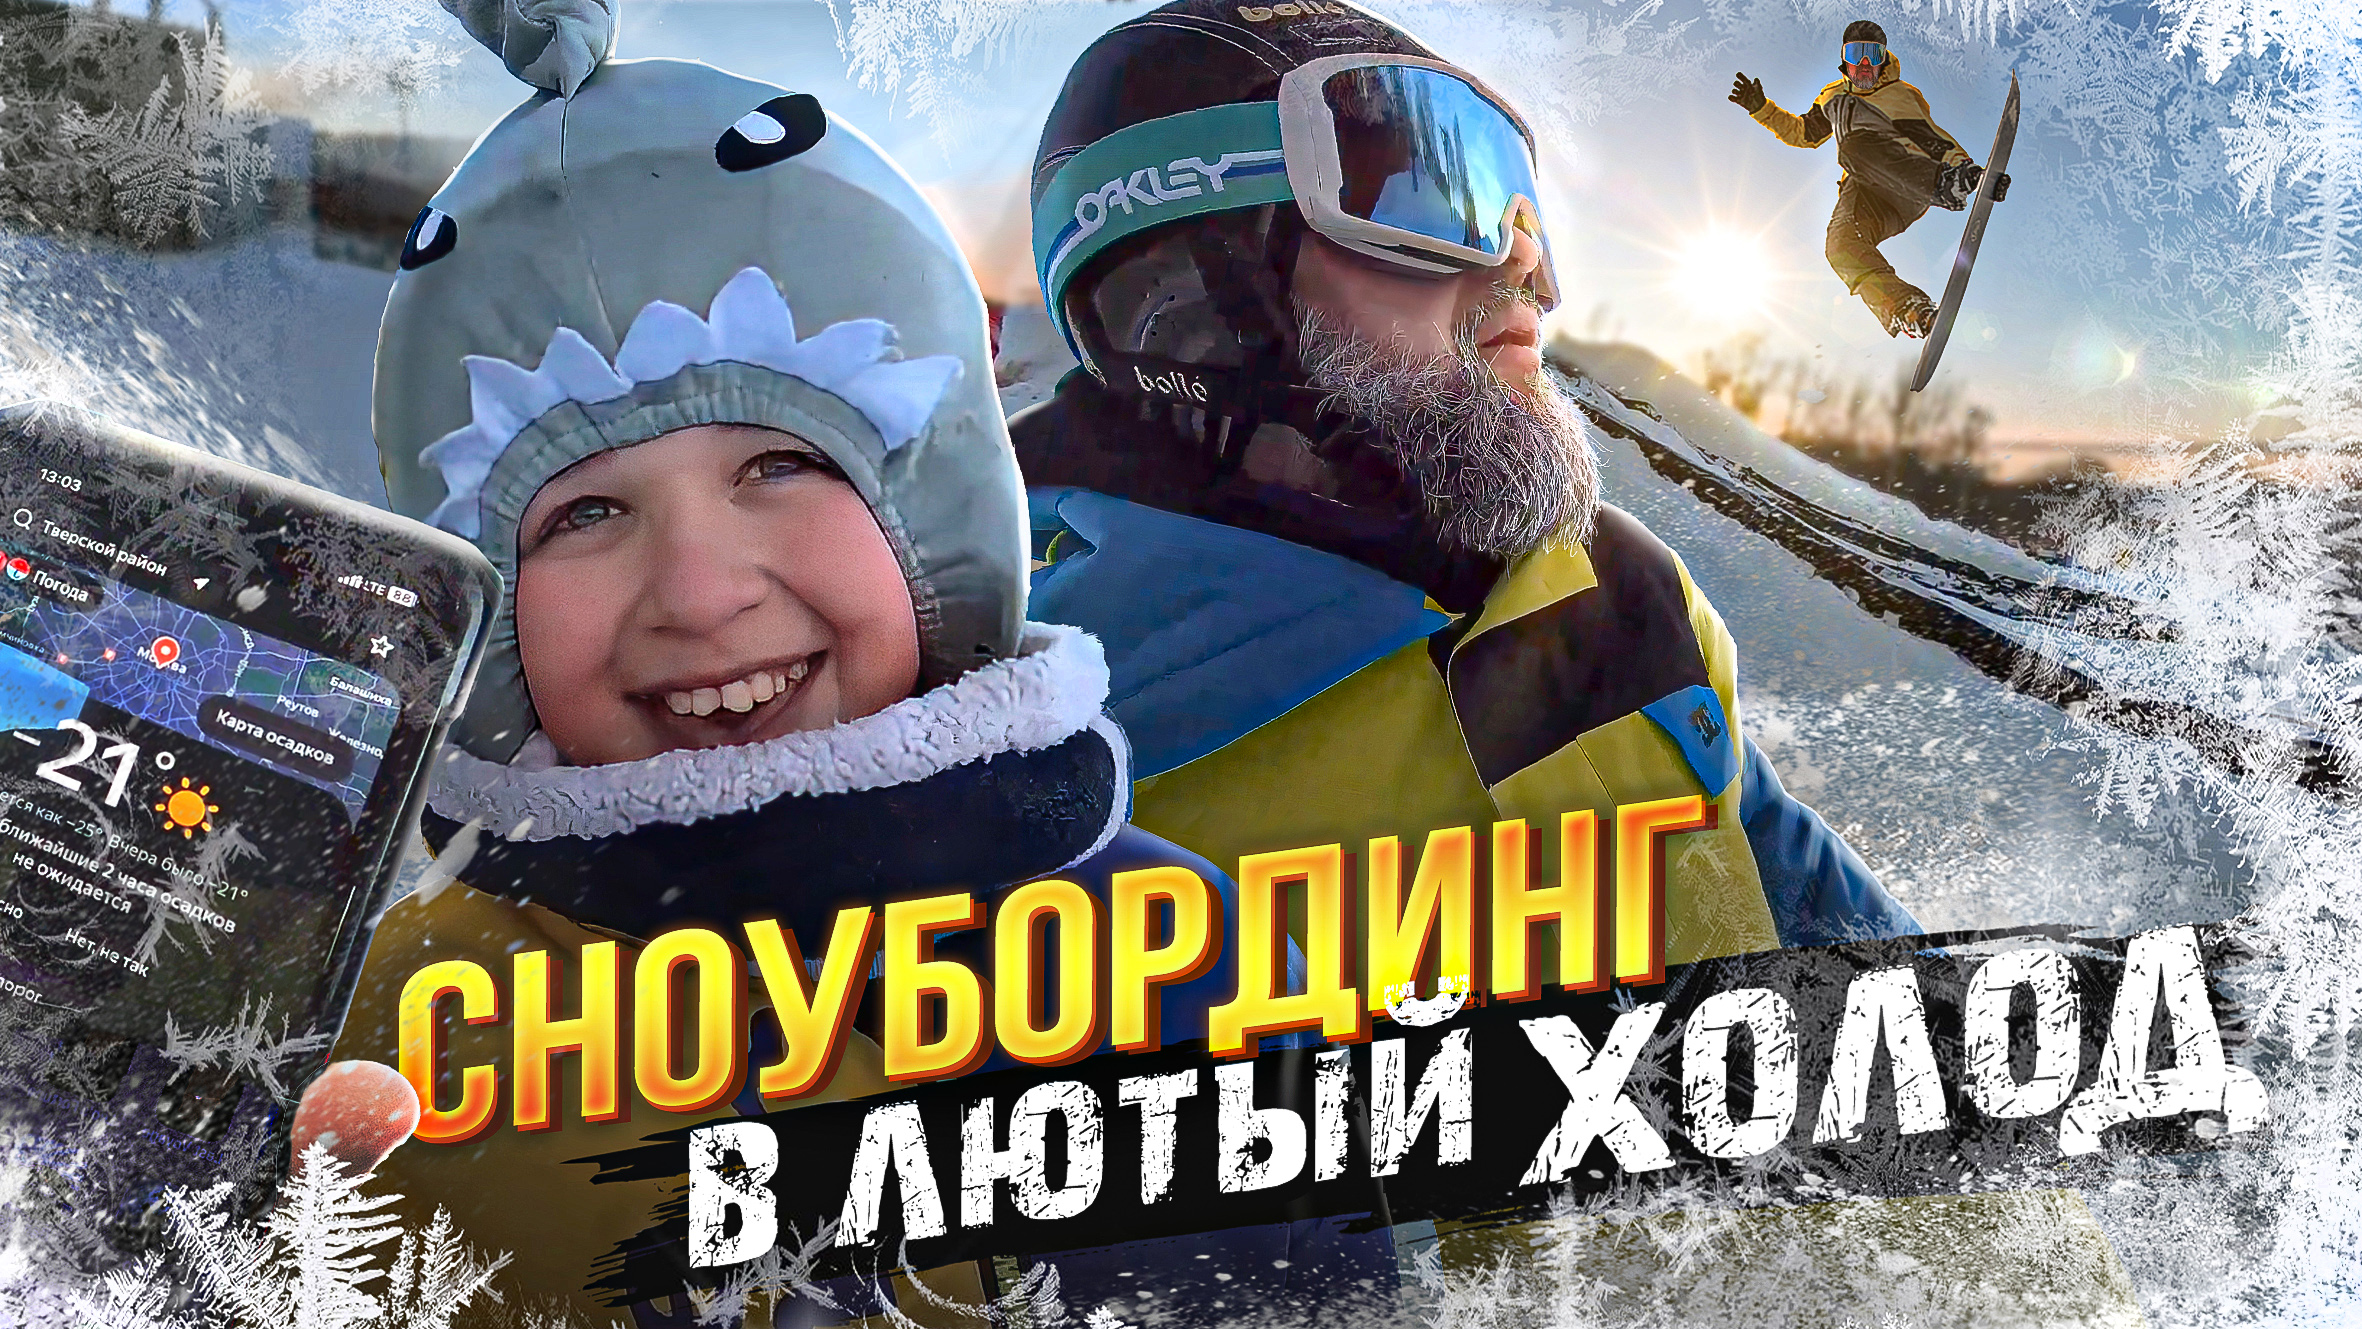 Самый большой горнолыжный трамплин в Москве.Давай катай в защите.Лютая морозная каталка в Крылатском